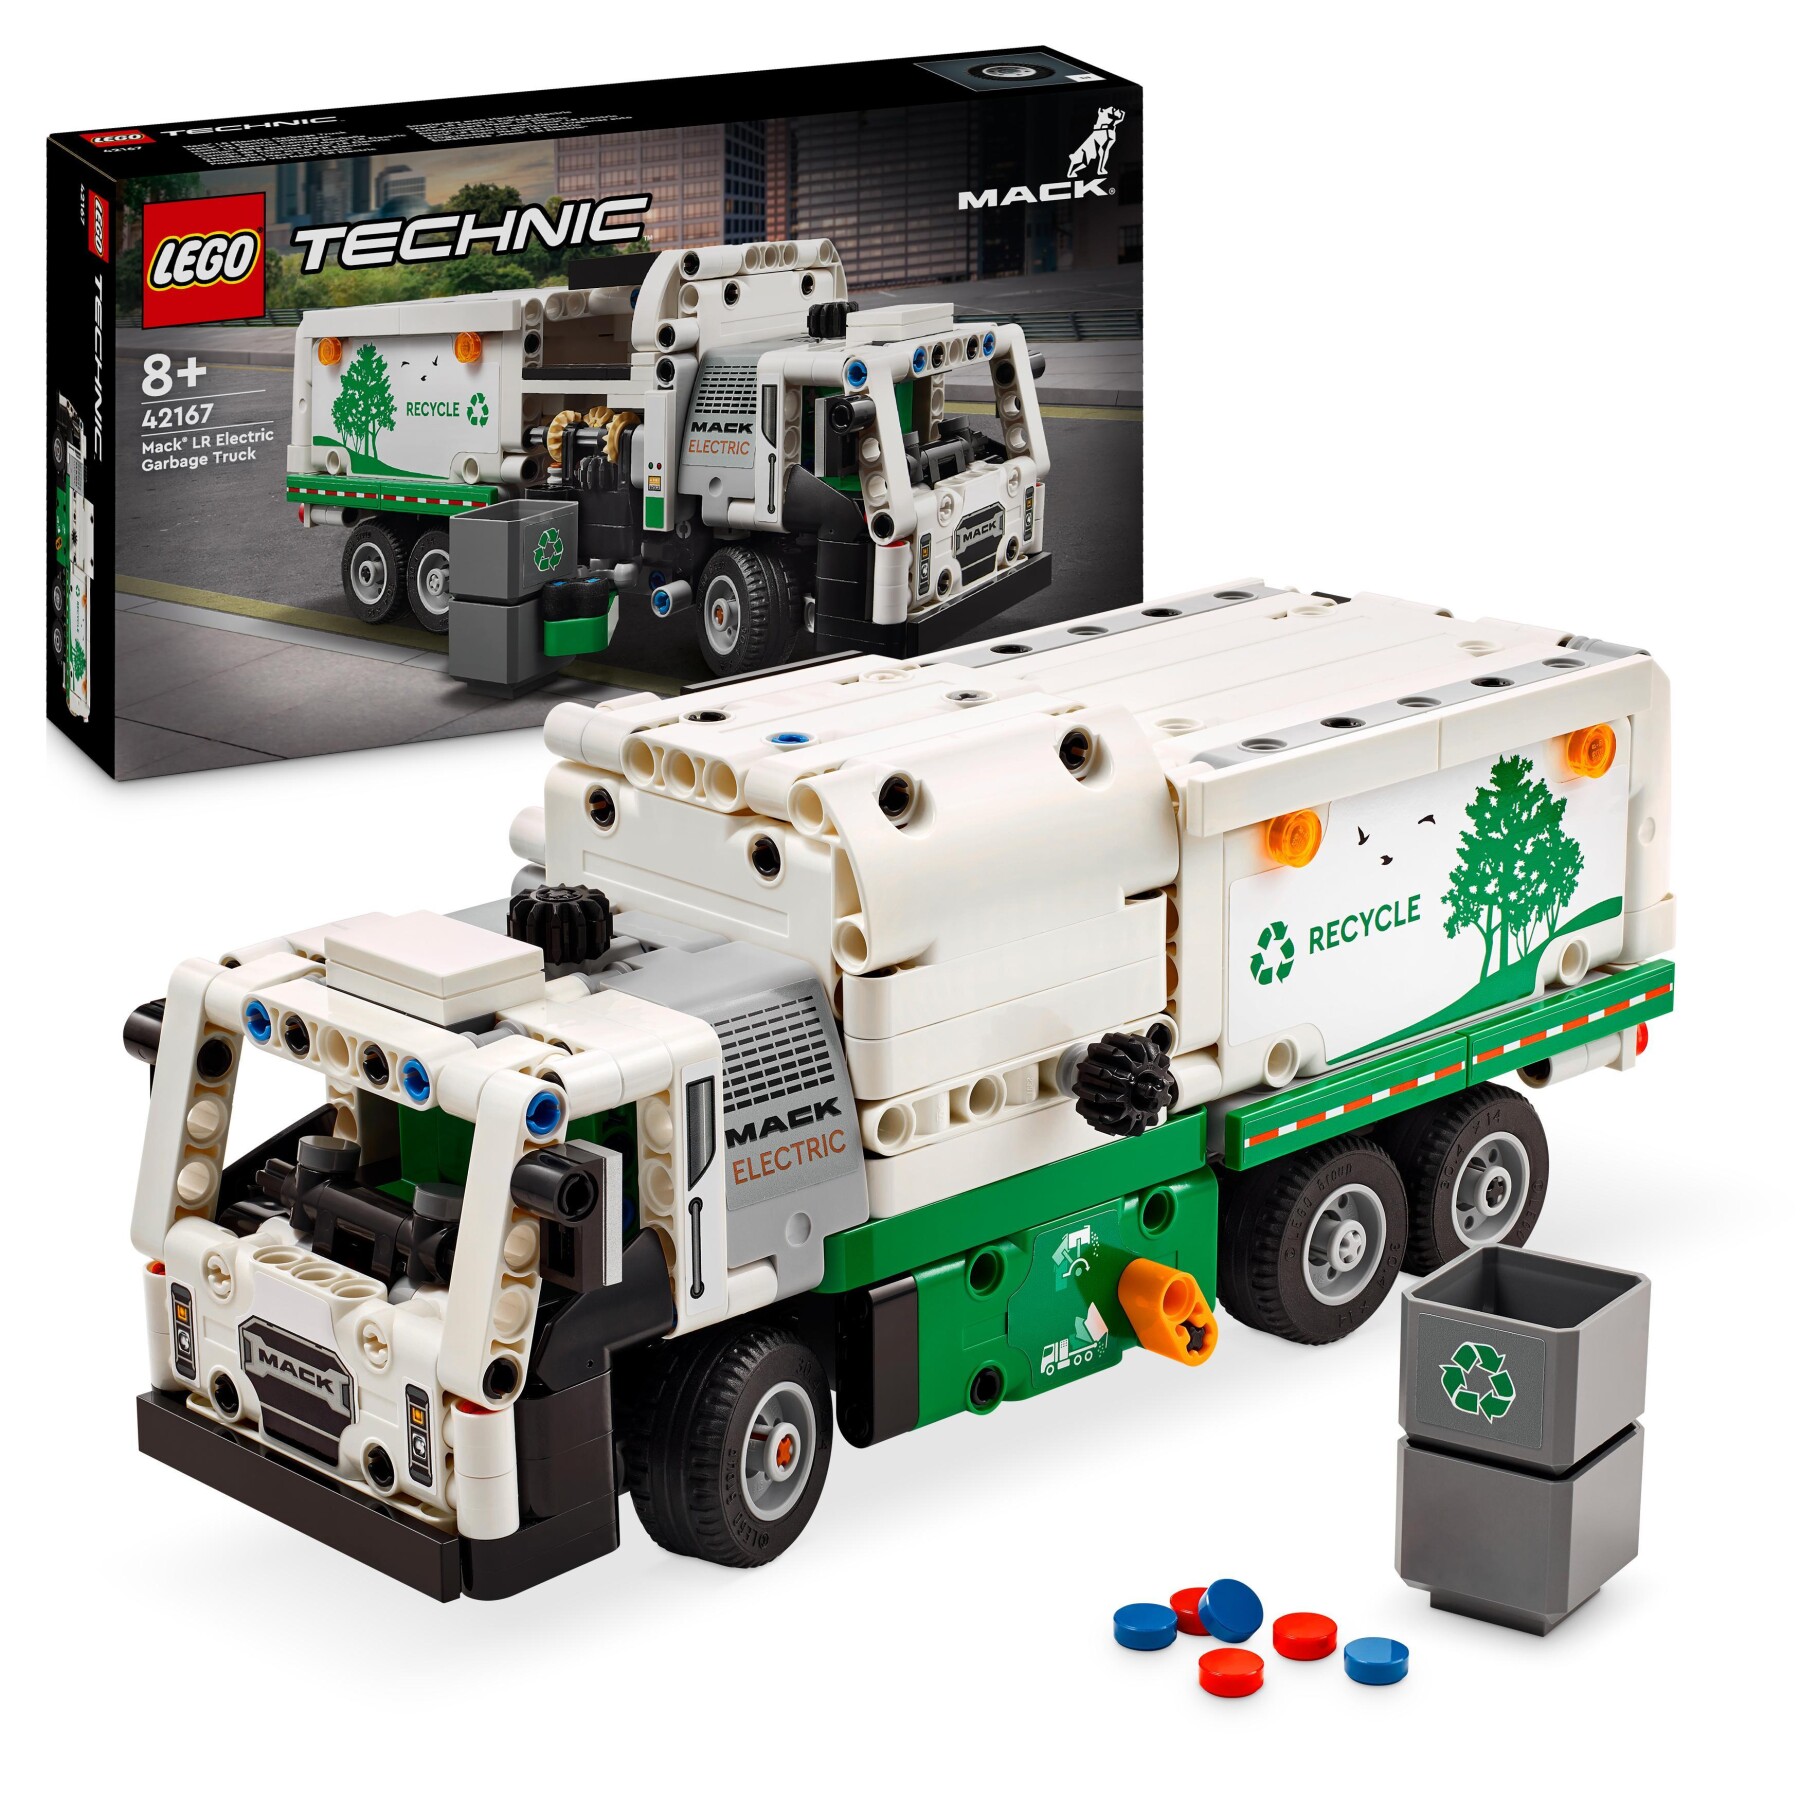 Lego technic 42167 camion della spazzatura mack lr electric, veicolo giocattolo raccolta rifiuti, gioco per bambini 8+ anni - LEGO TECHNIC